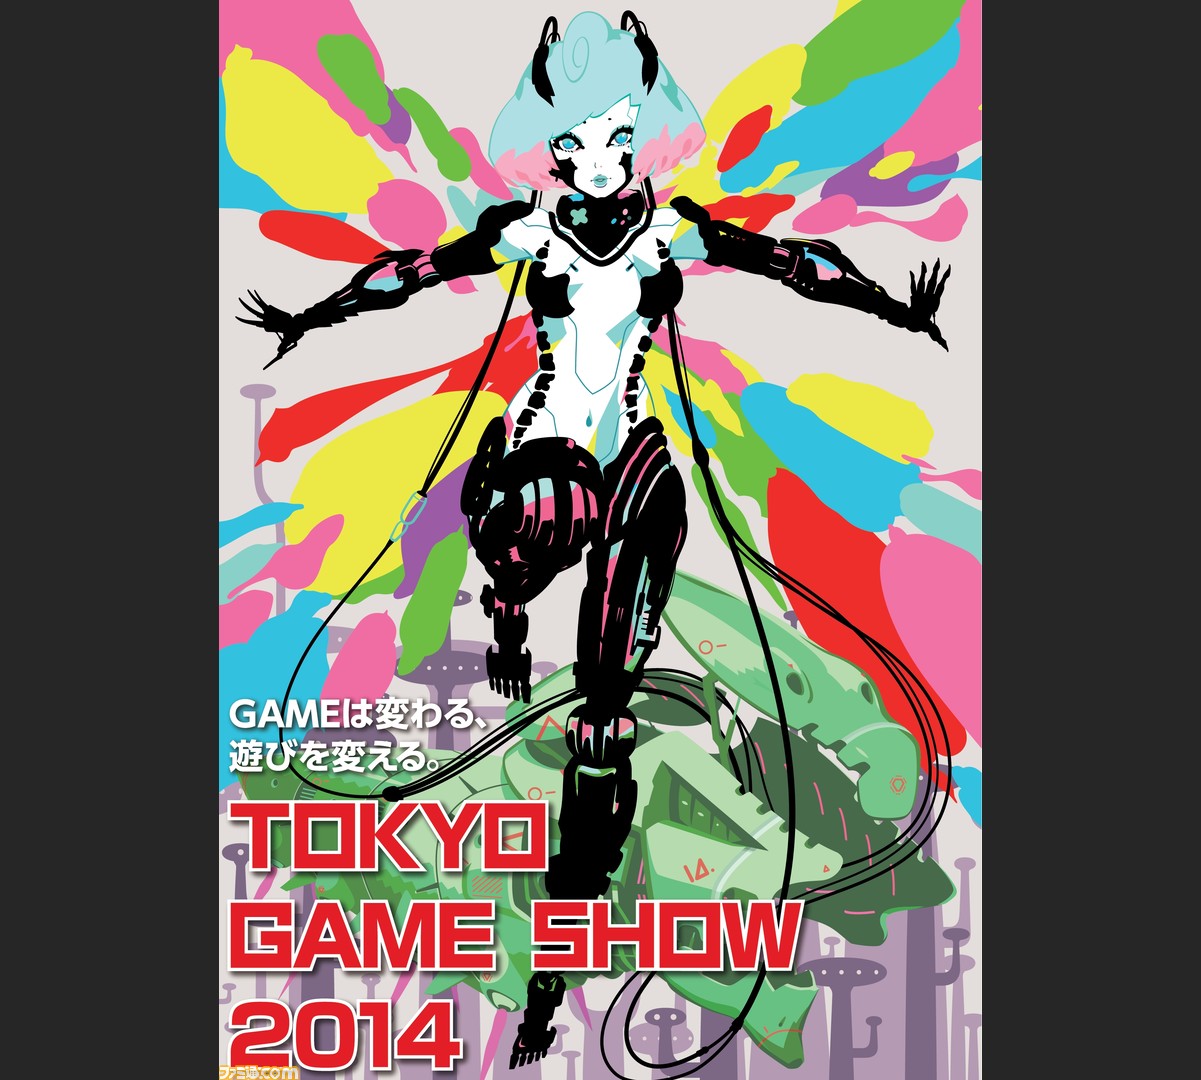 東京ゲームショウ14のメインビジュアルが決定 Gameは変わる 遊びを変える のキーワード 変わる を 羽化 で表現 Tgs 14 ファミ通 Com